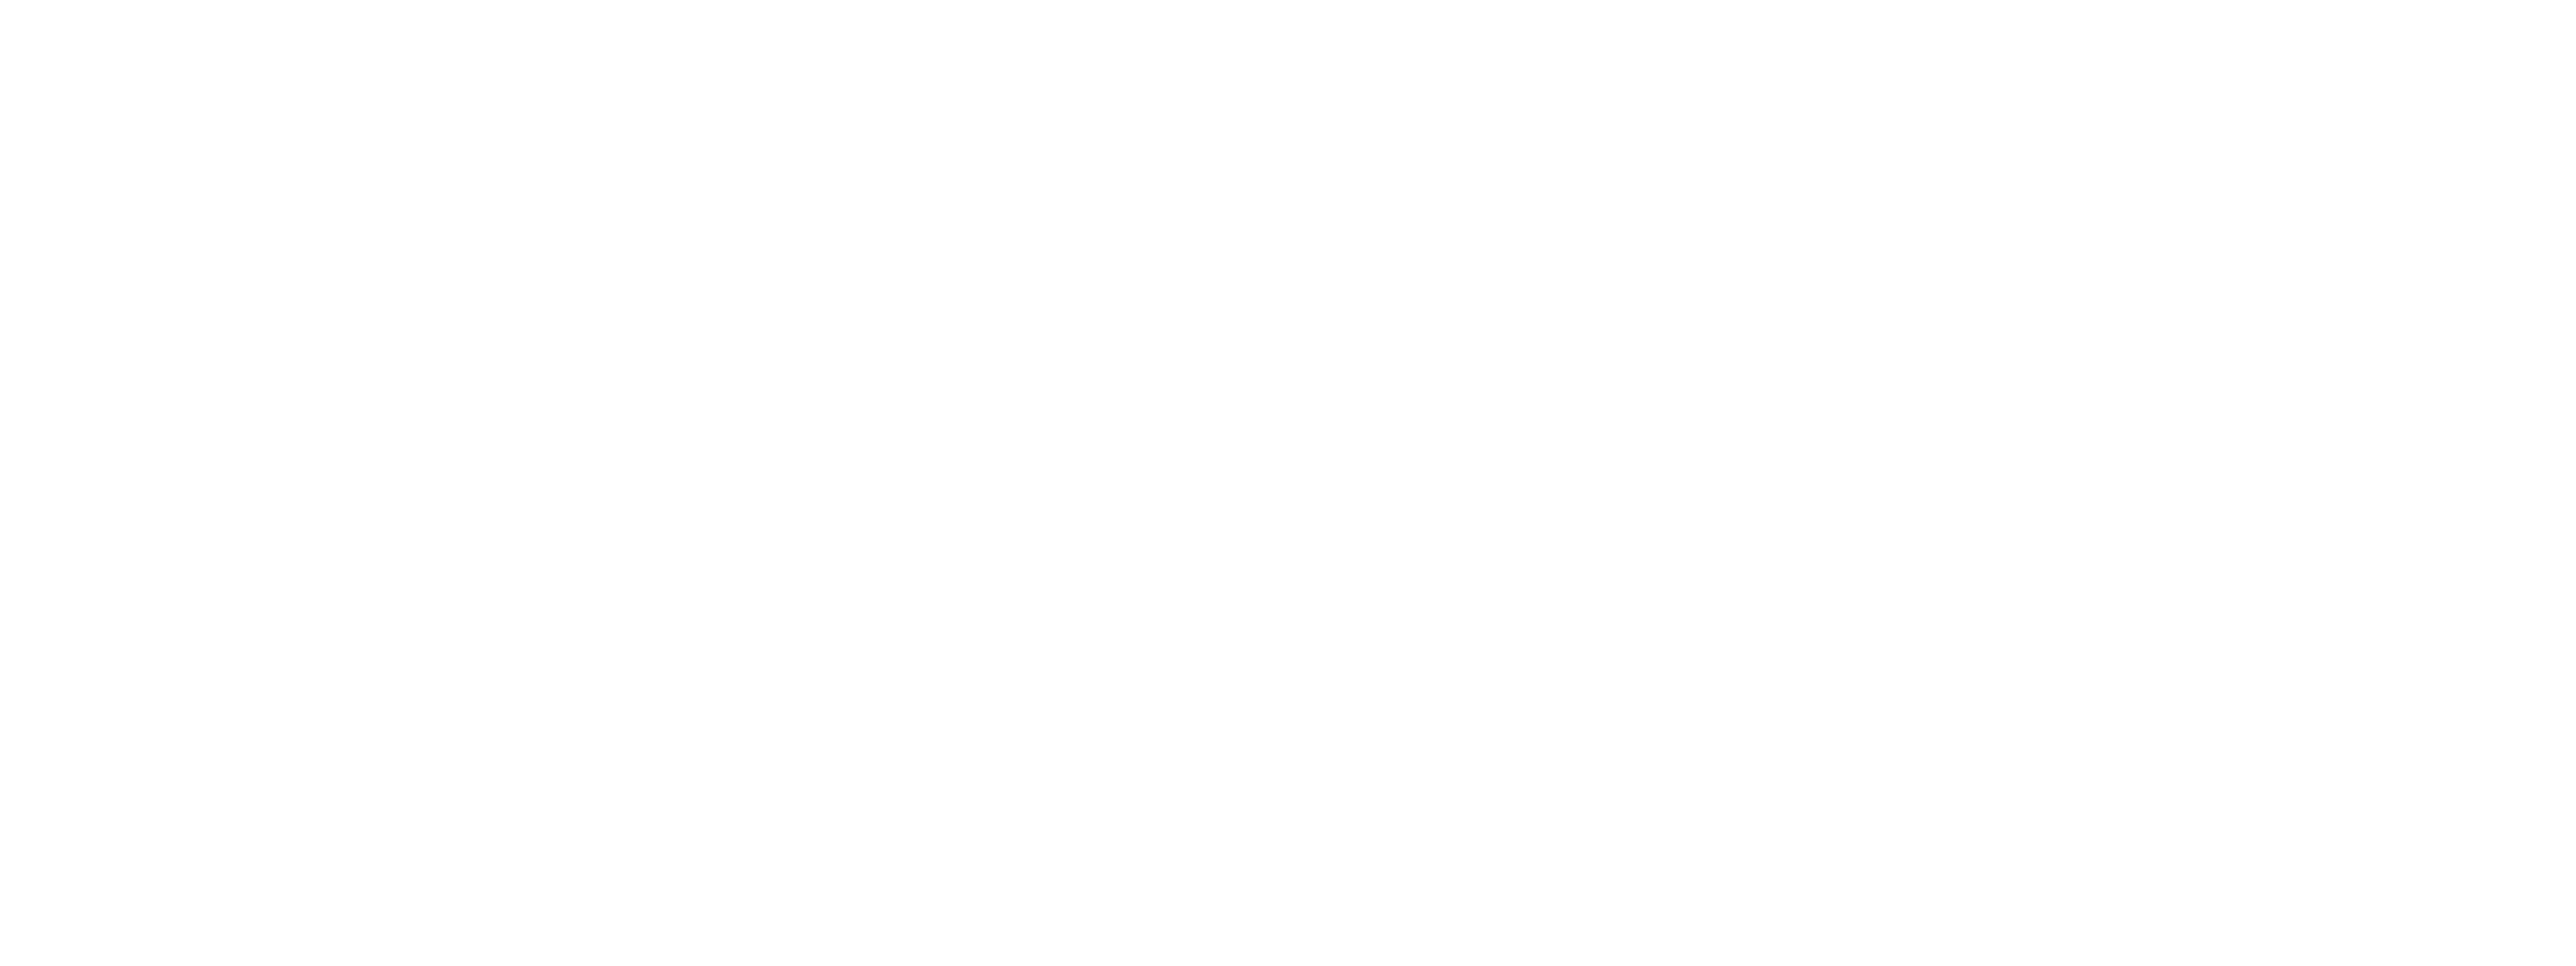 Vancoast Seeds Canada – Wholesale Marijuana Seeds